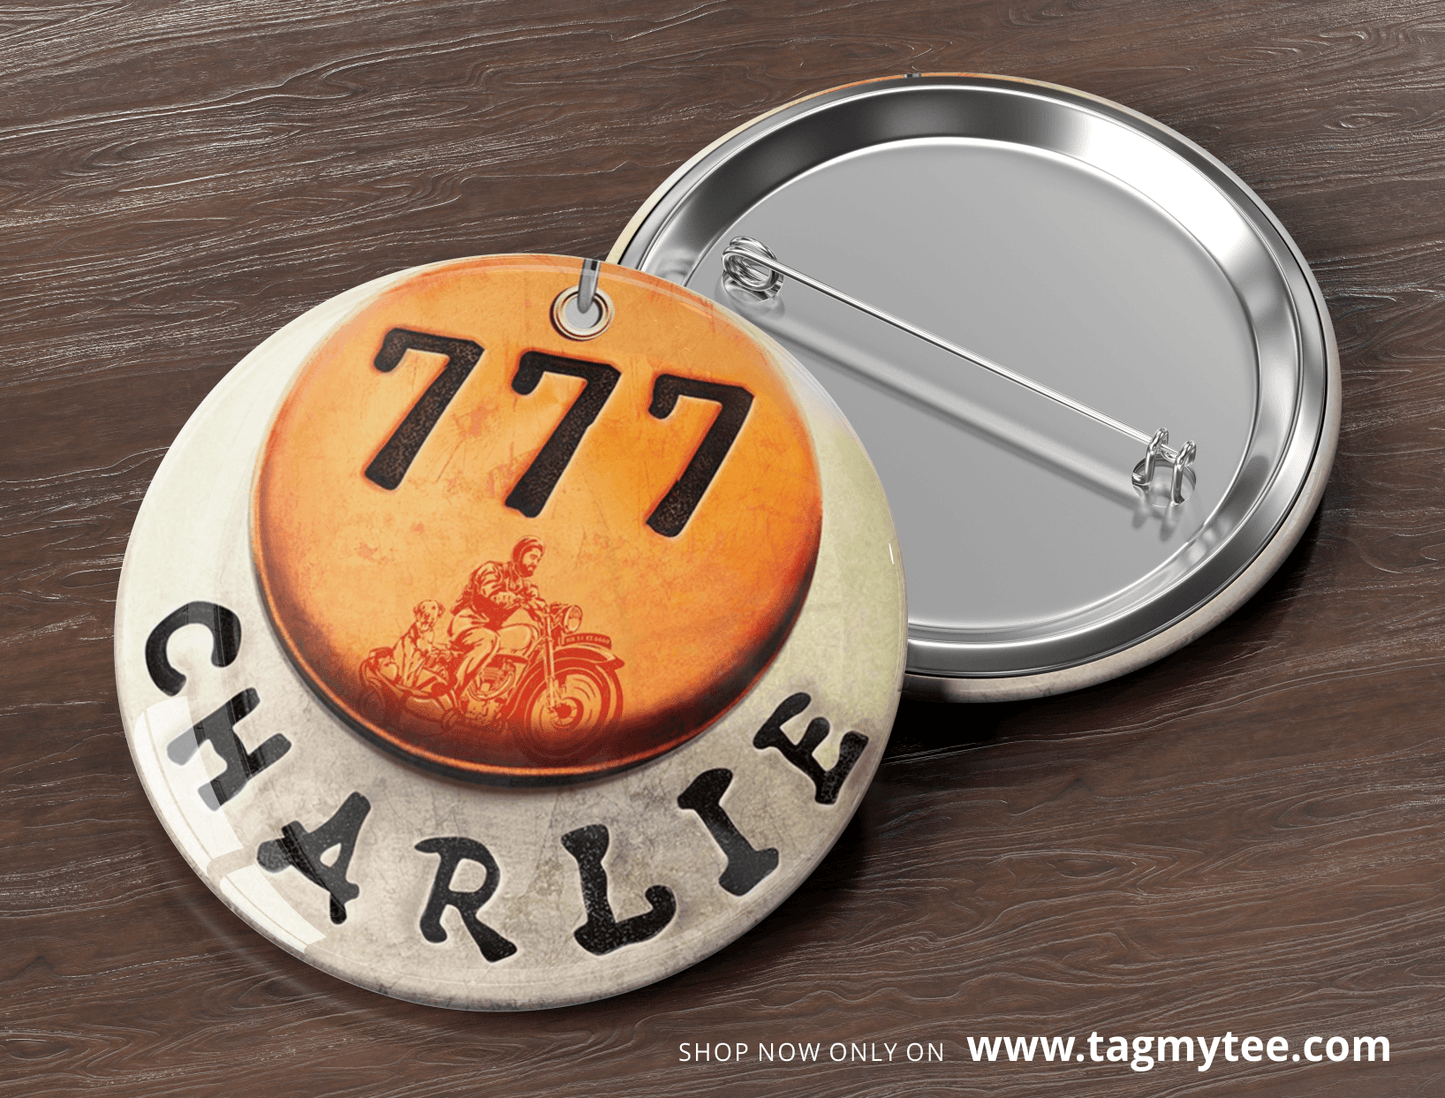 777 Charlie Badge - TagMyTee - Badges